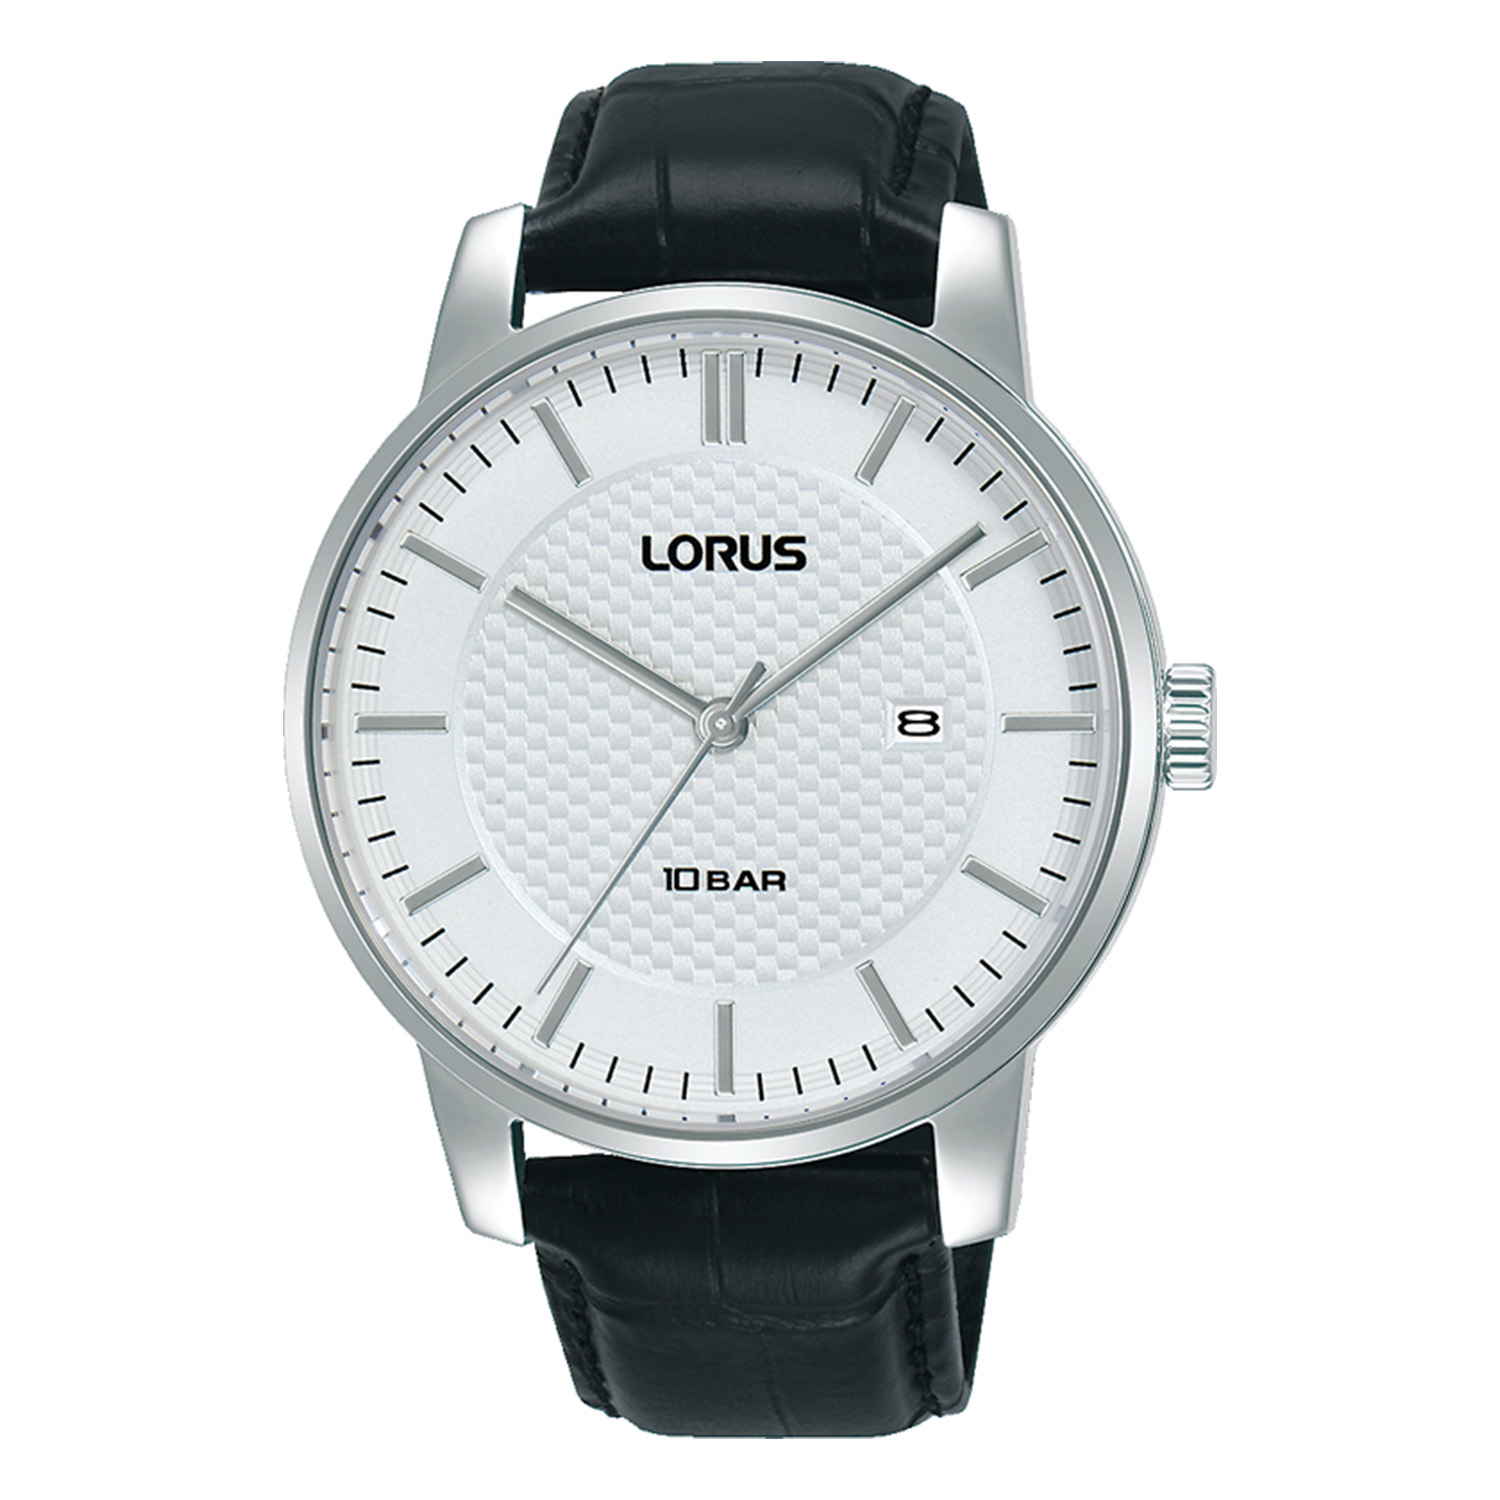 Ανδρικό ρολόι Lorus με λευκό καντράν και μαύρο δερμάτινο λουράκι.